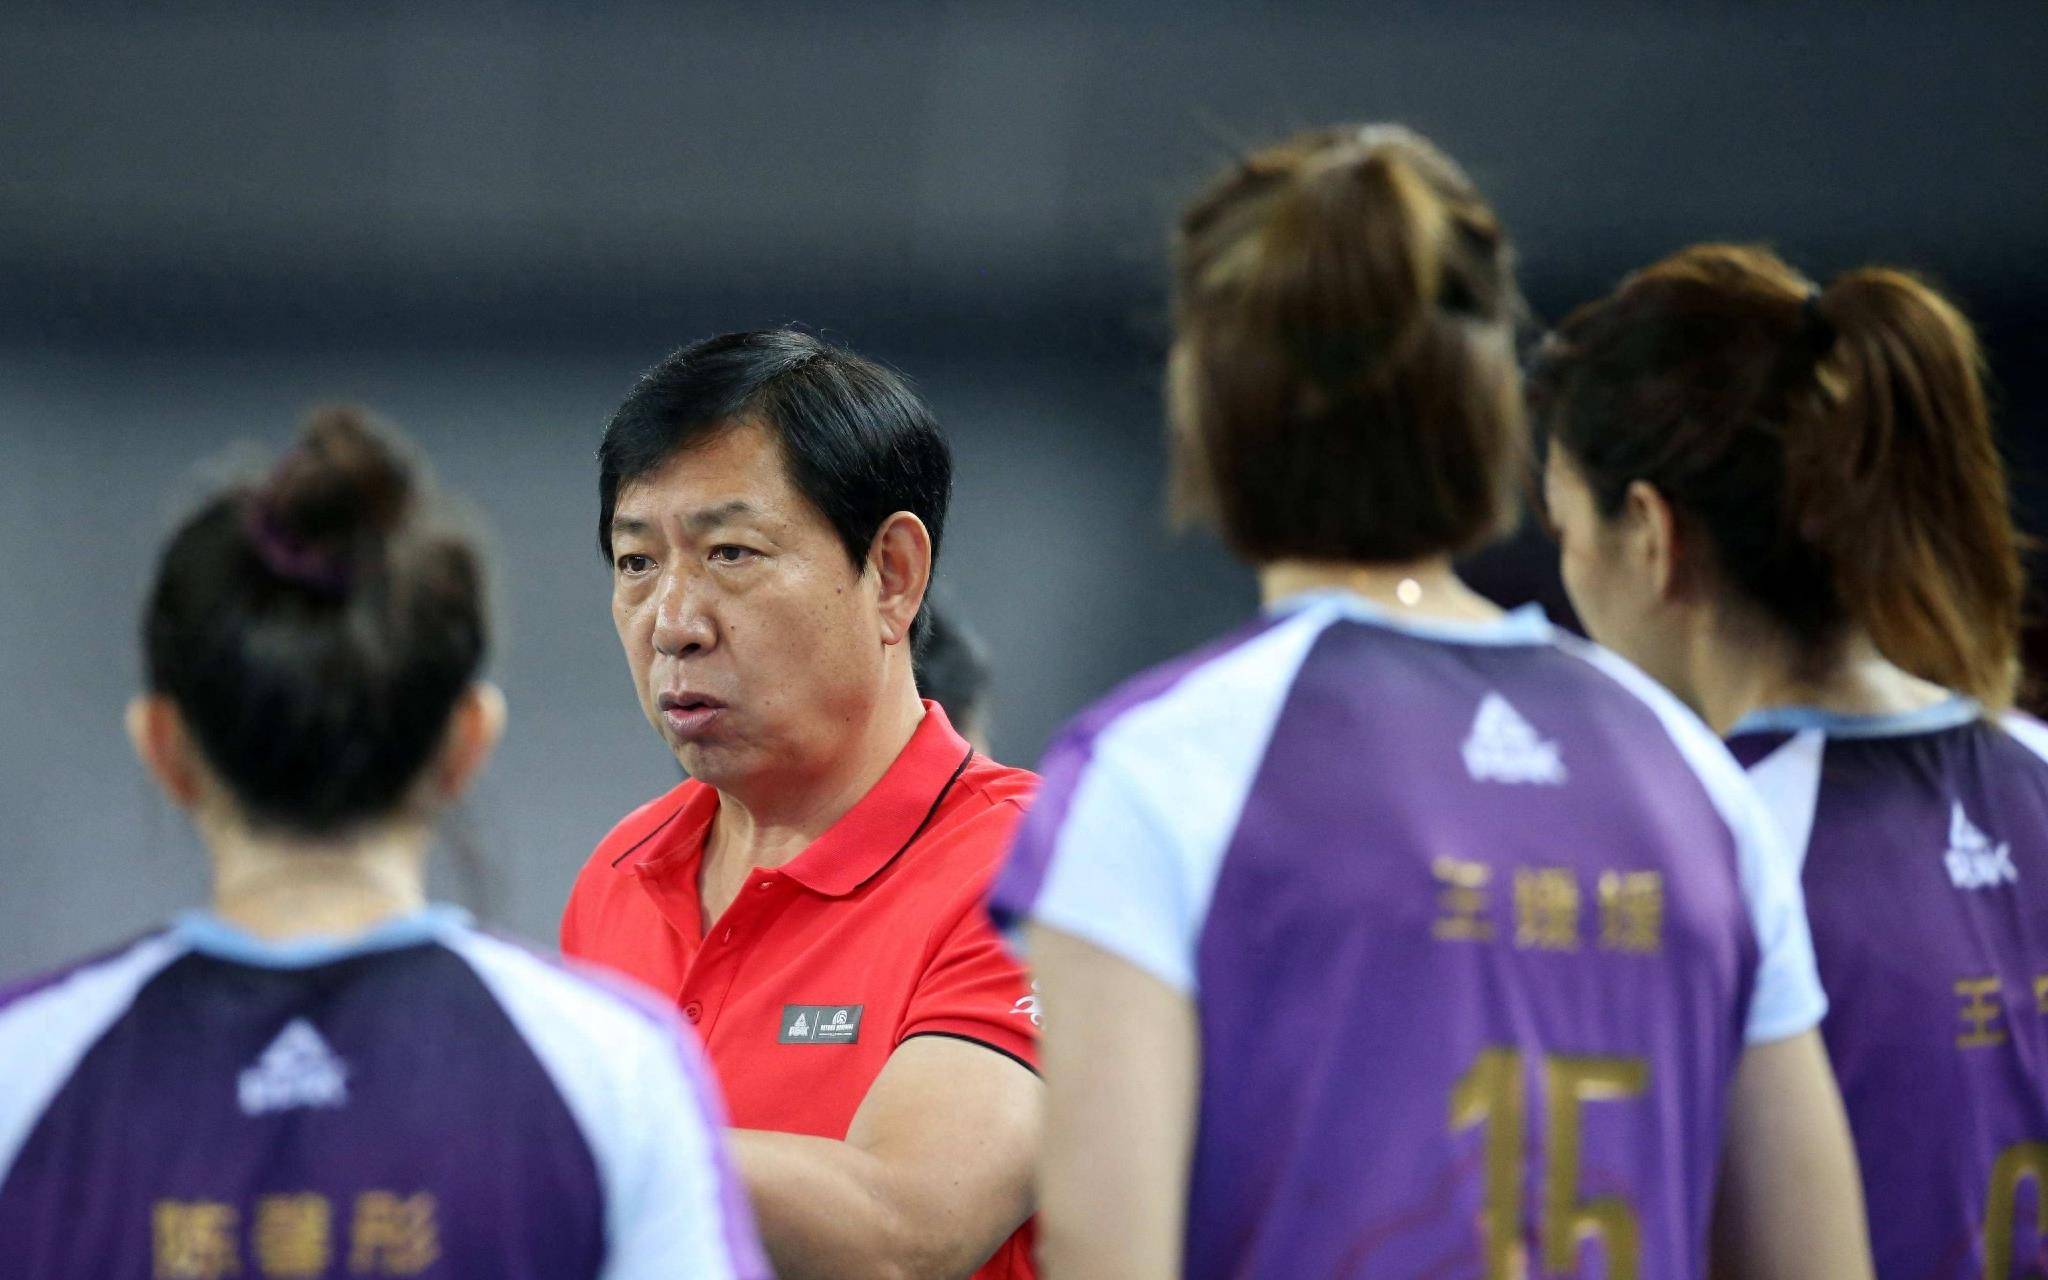 中国排球协会邀请了名帅王宝泉加入女排亚运队专家团,以提高国内教练